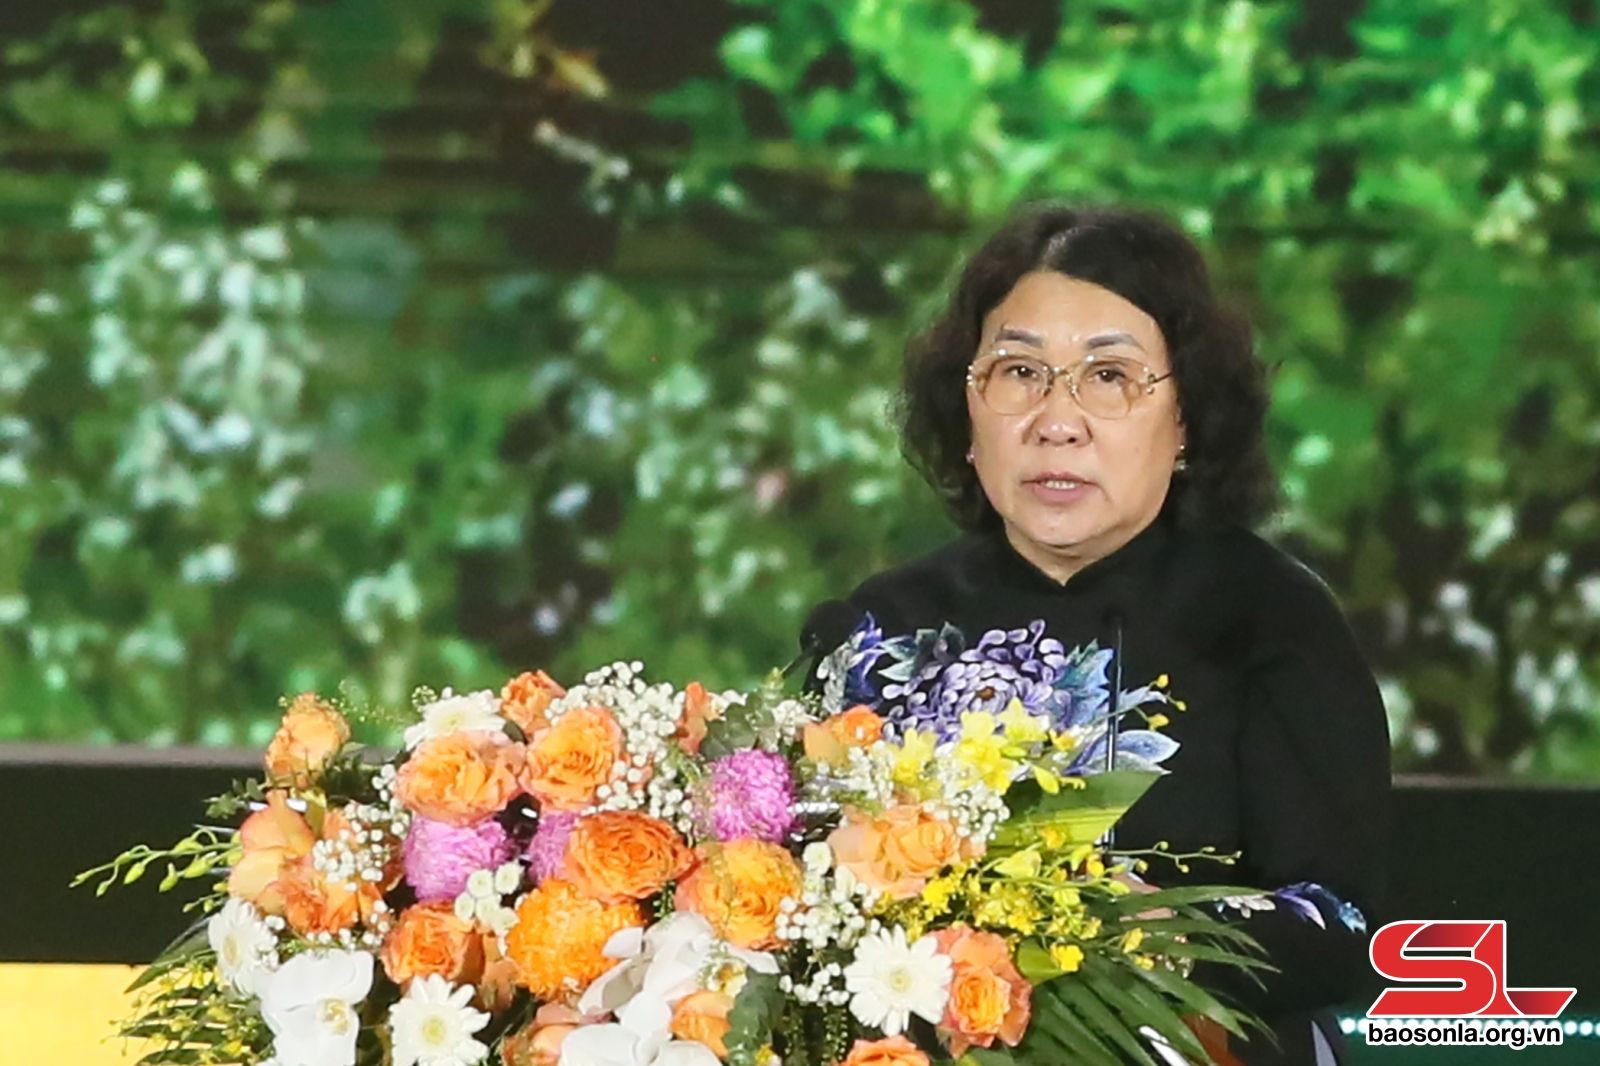 Đồng chí Tráng Thị Xuân phát biểu tại Lễ công bố.

